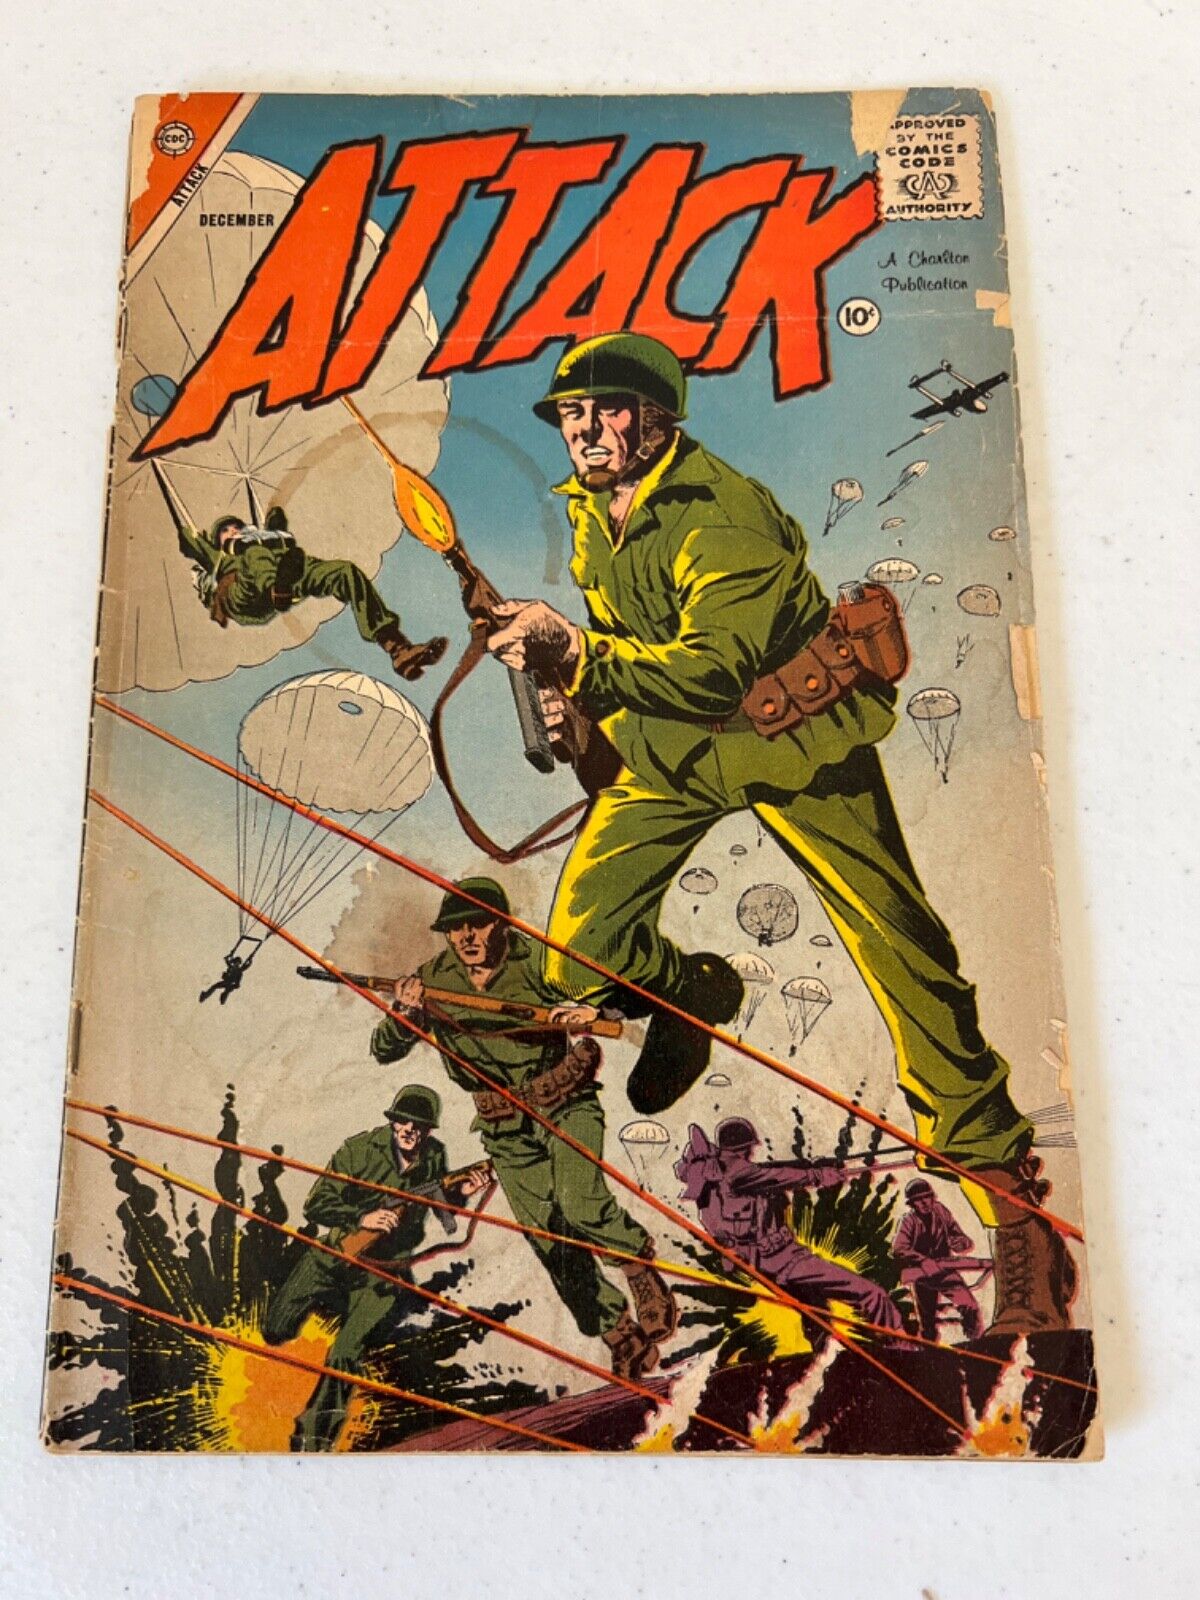 *Rare* Attack Vol 1 No 55 Comic Book December 1958